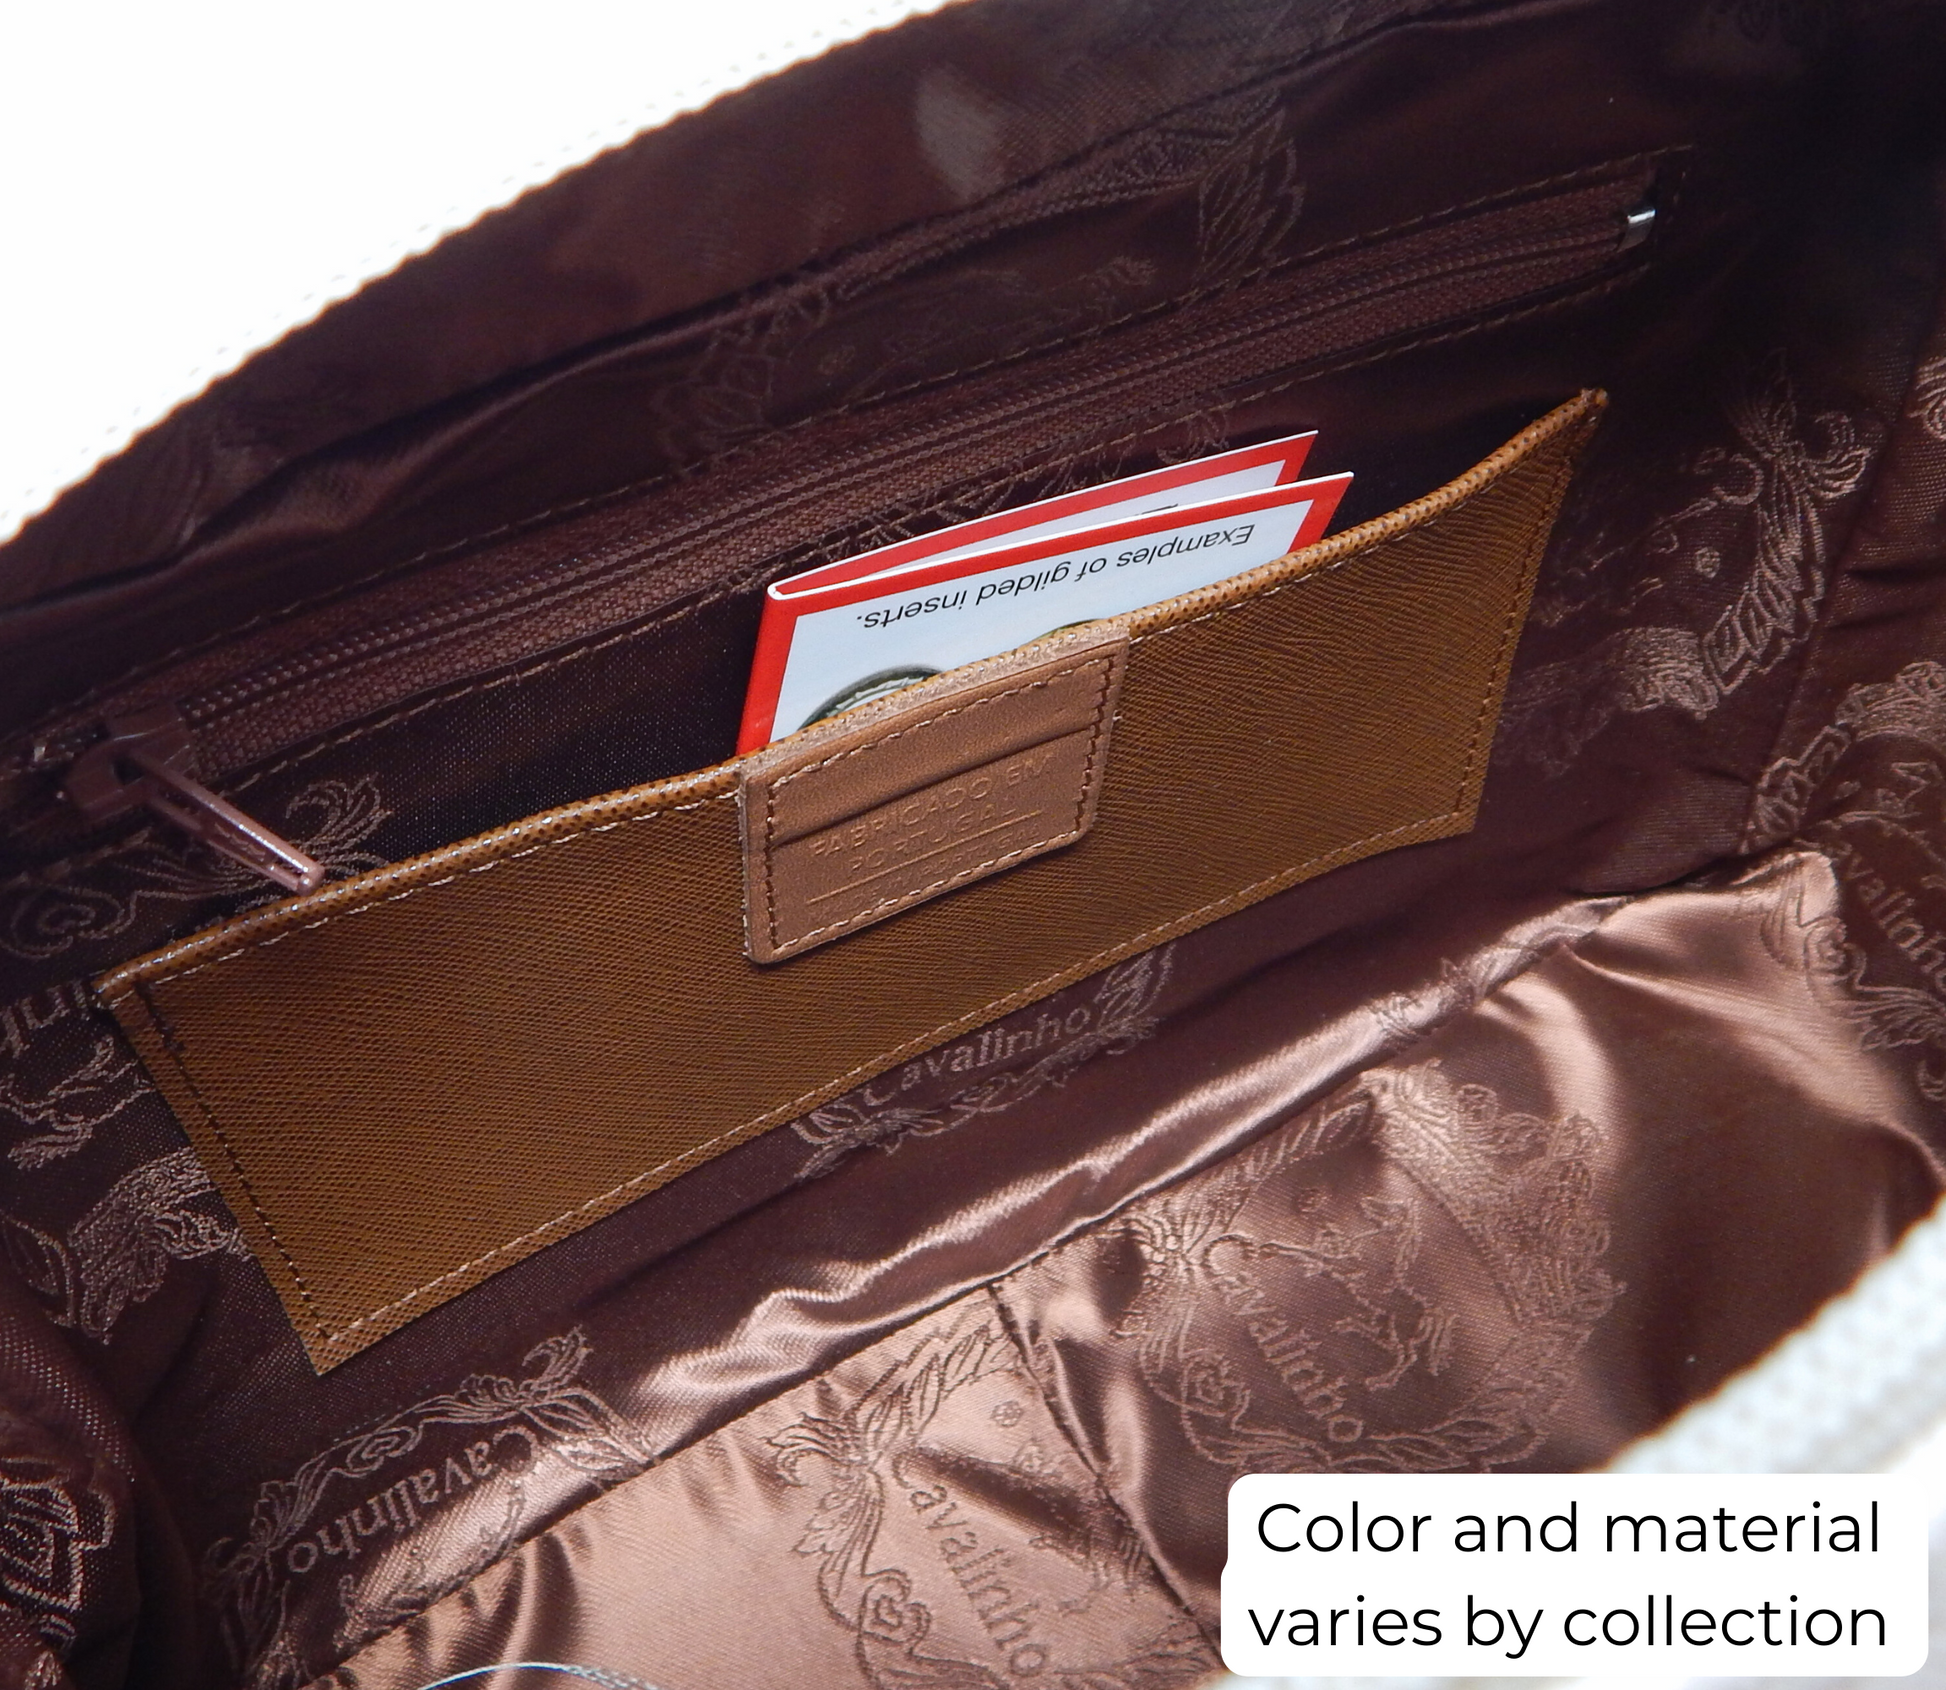 #color_ Beige White | Cavalinho Gallop Patent Leather Handbag - Beige White - inside_0512_2_57656c98-a690-4f9b-aa8c-75d0d55e8c7a